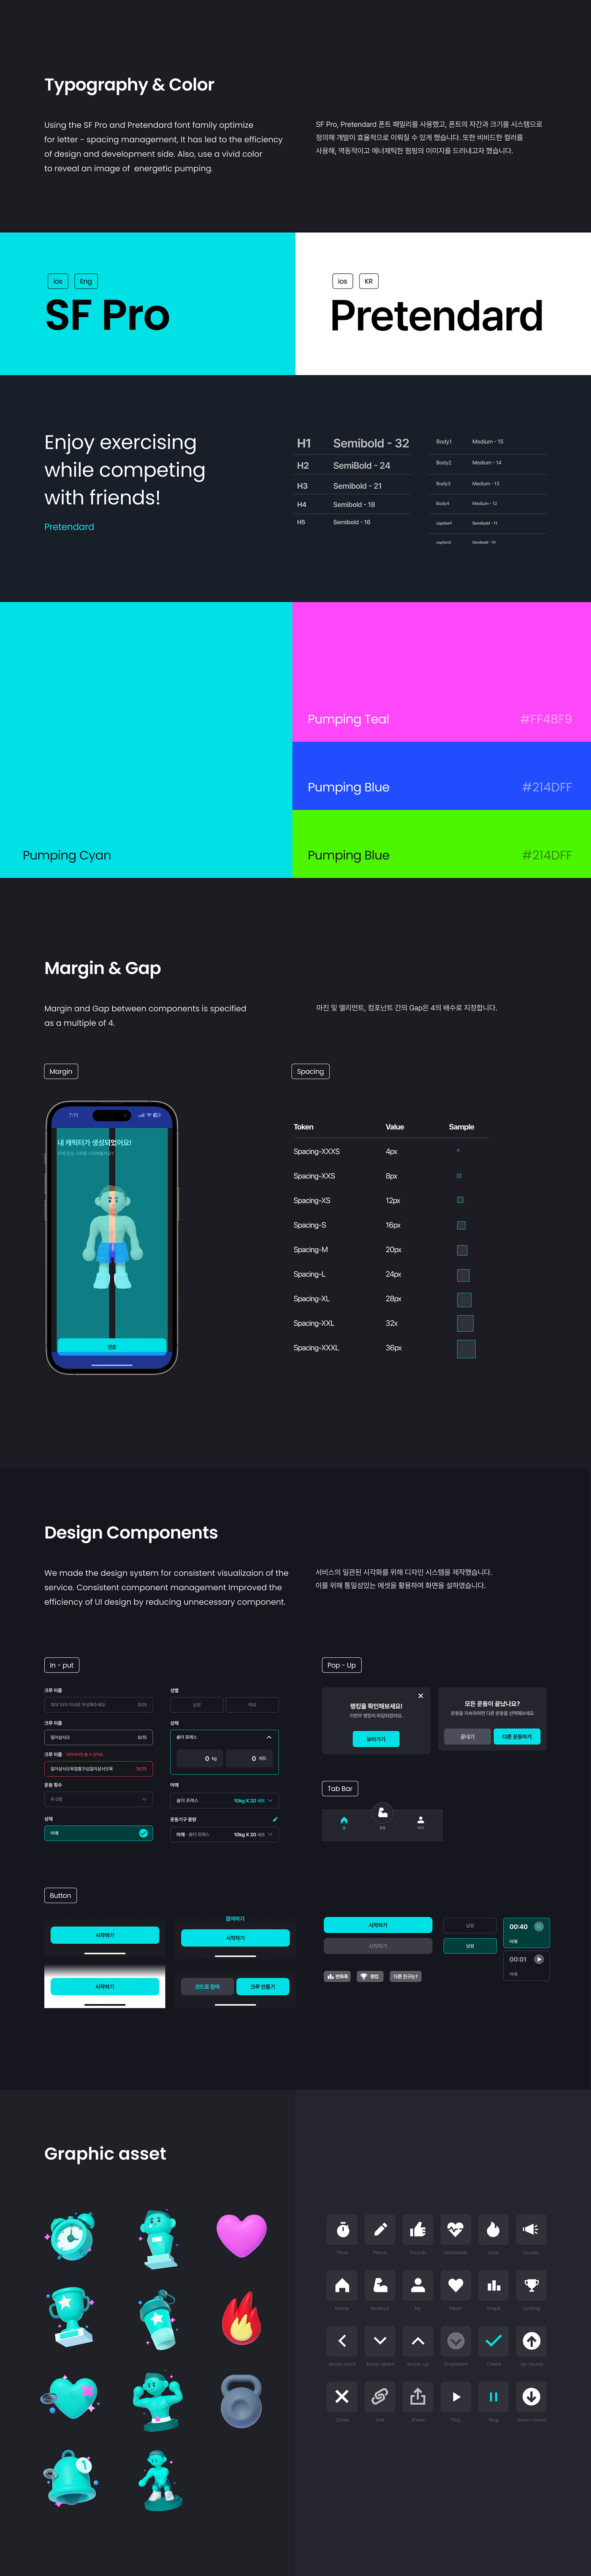 uxui 3D user interface uxdesign uiux app design workout Mobile app ui design GUI